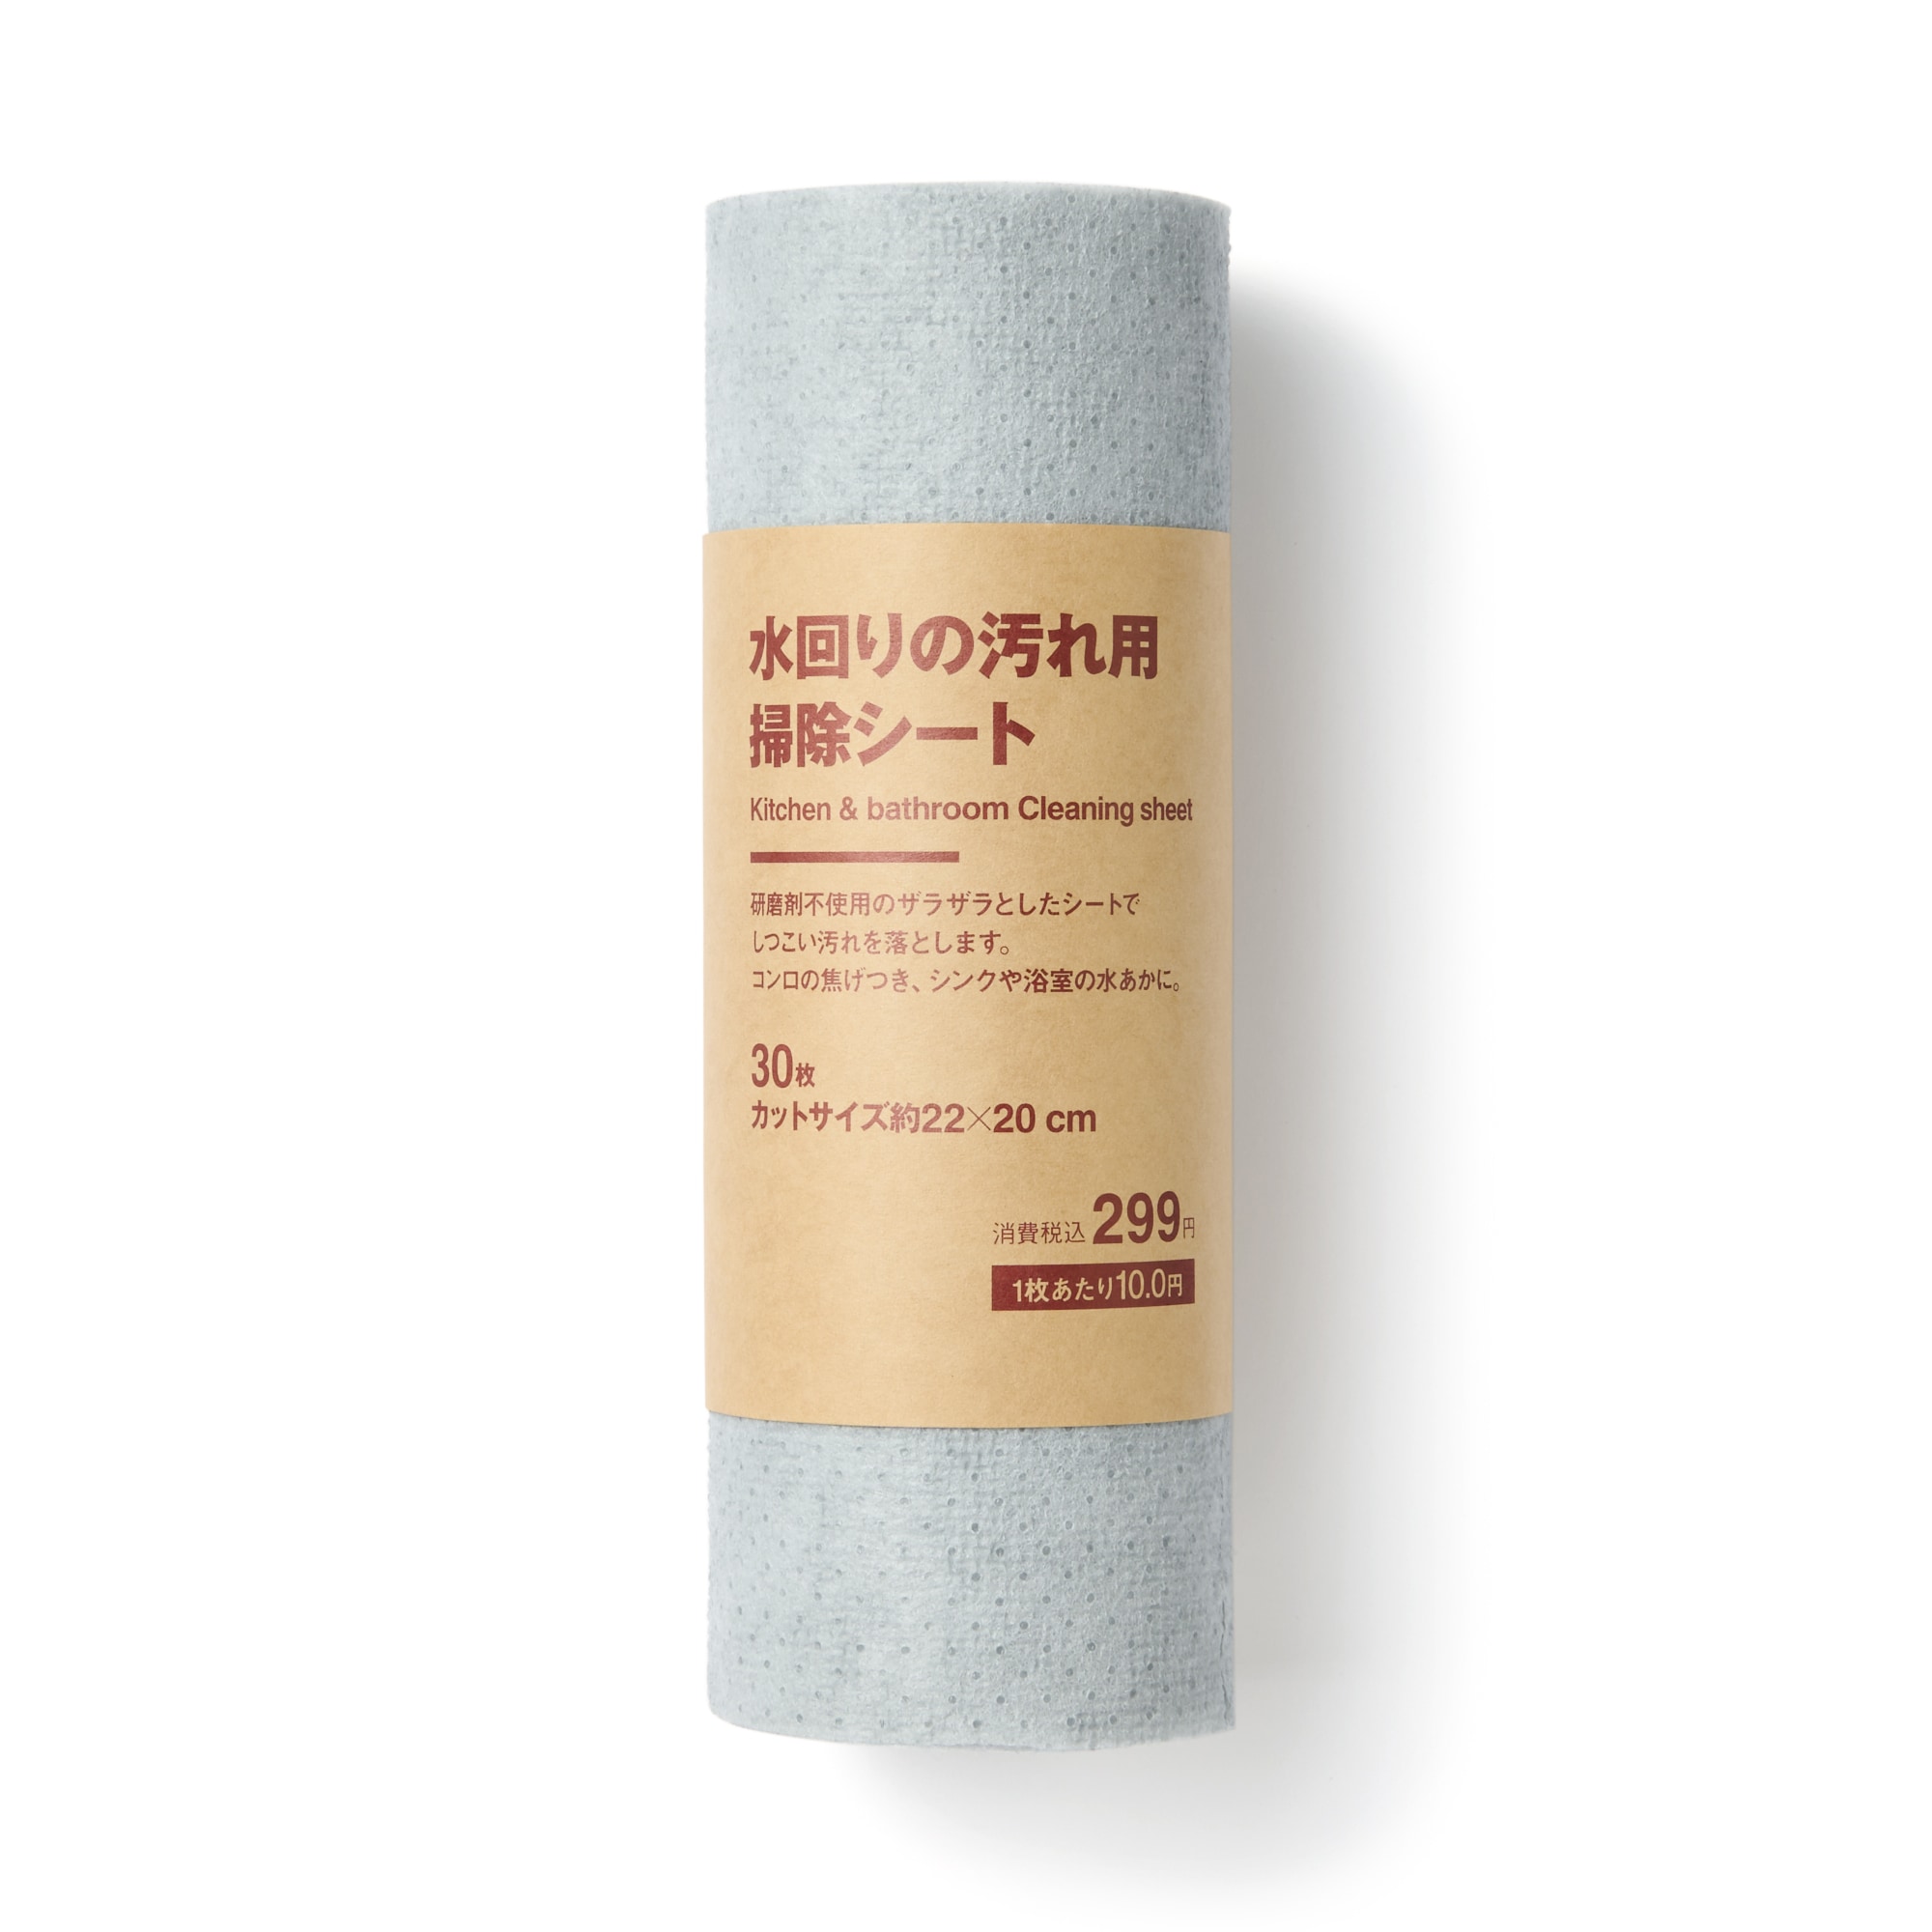 무인양품 일본 물로 제거 얼룩용 청소 시트 수세미